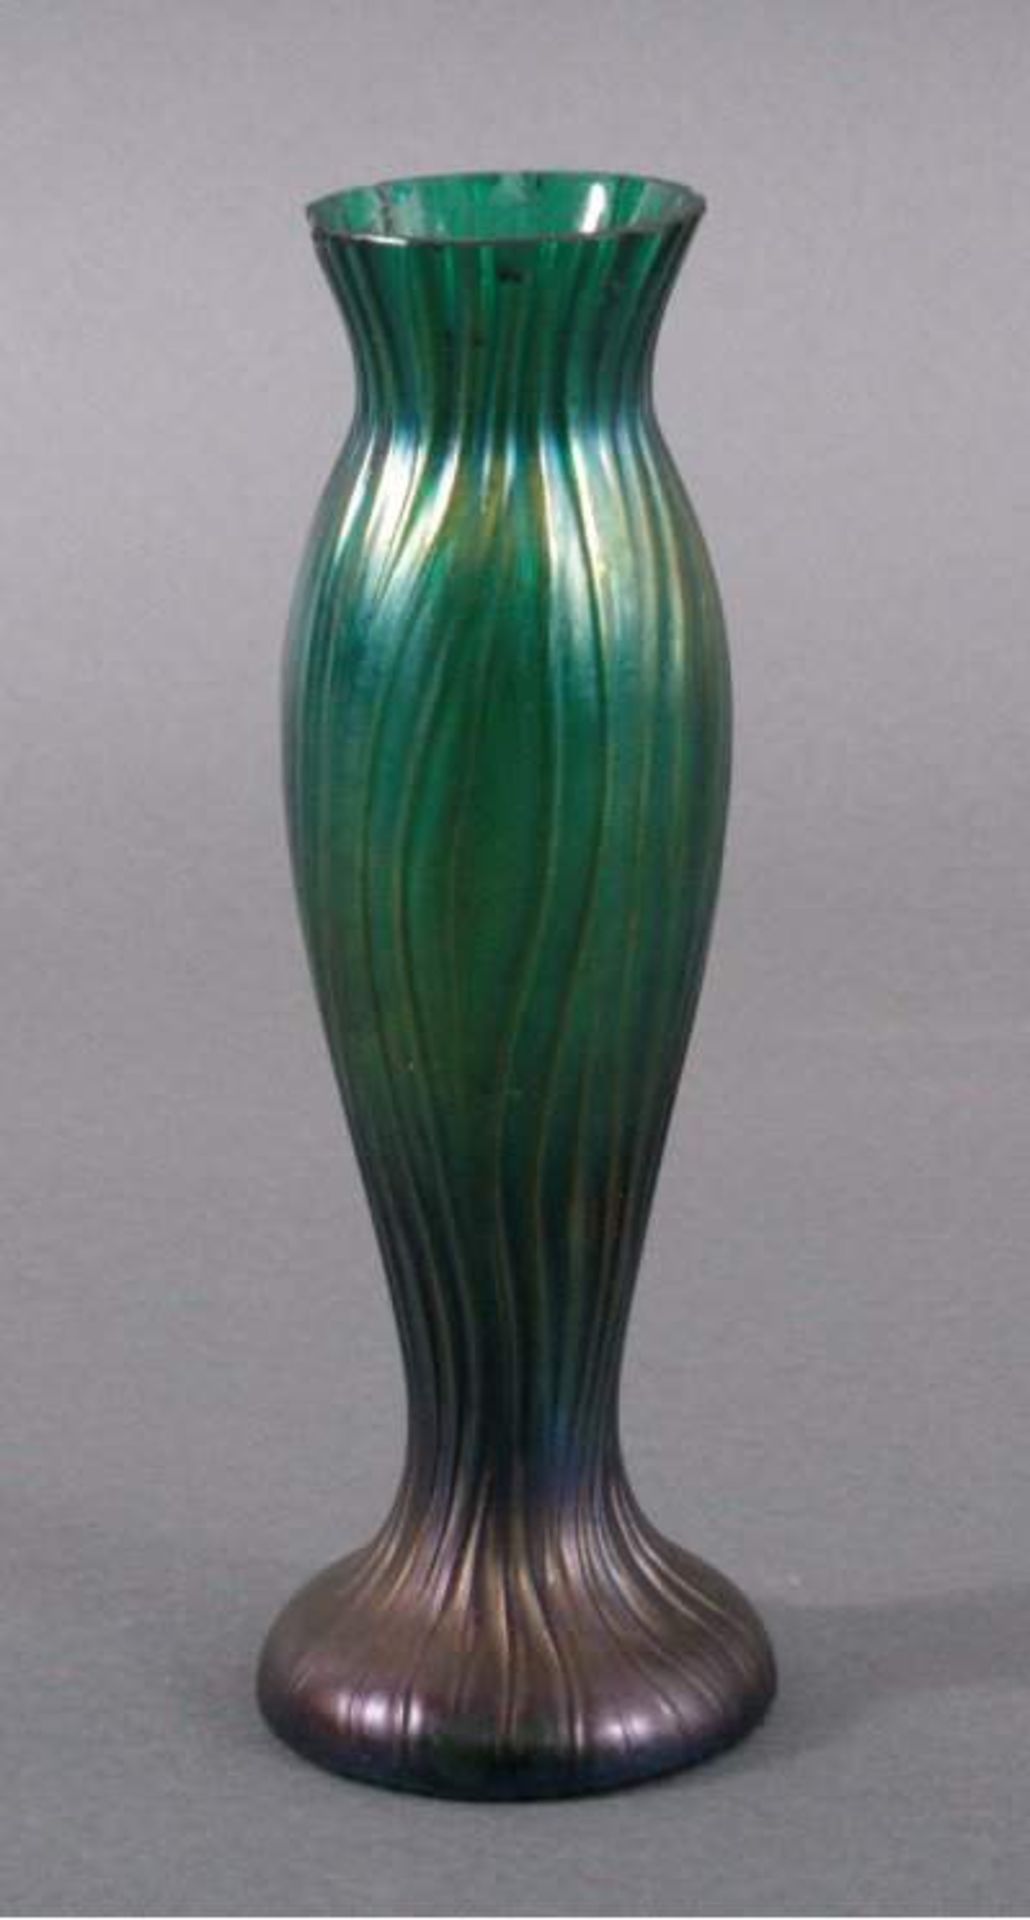 Kralik - Vase um 1910farbloses Glas, lüstierend grün-blau-gold, runder Stand,ausgestellte Mündung,